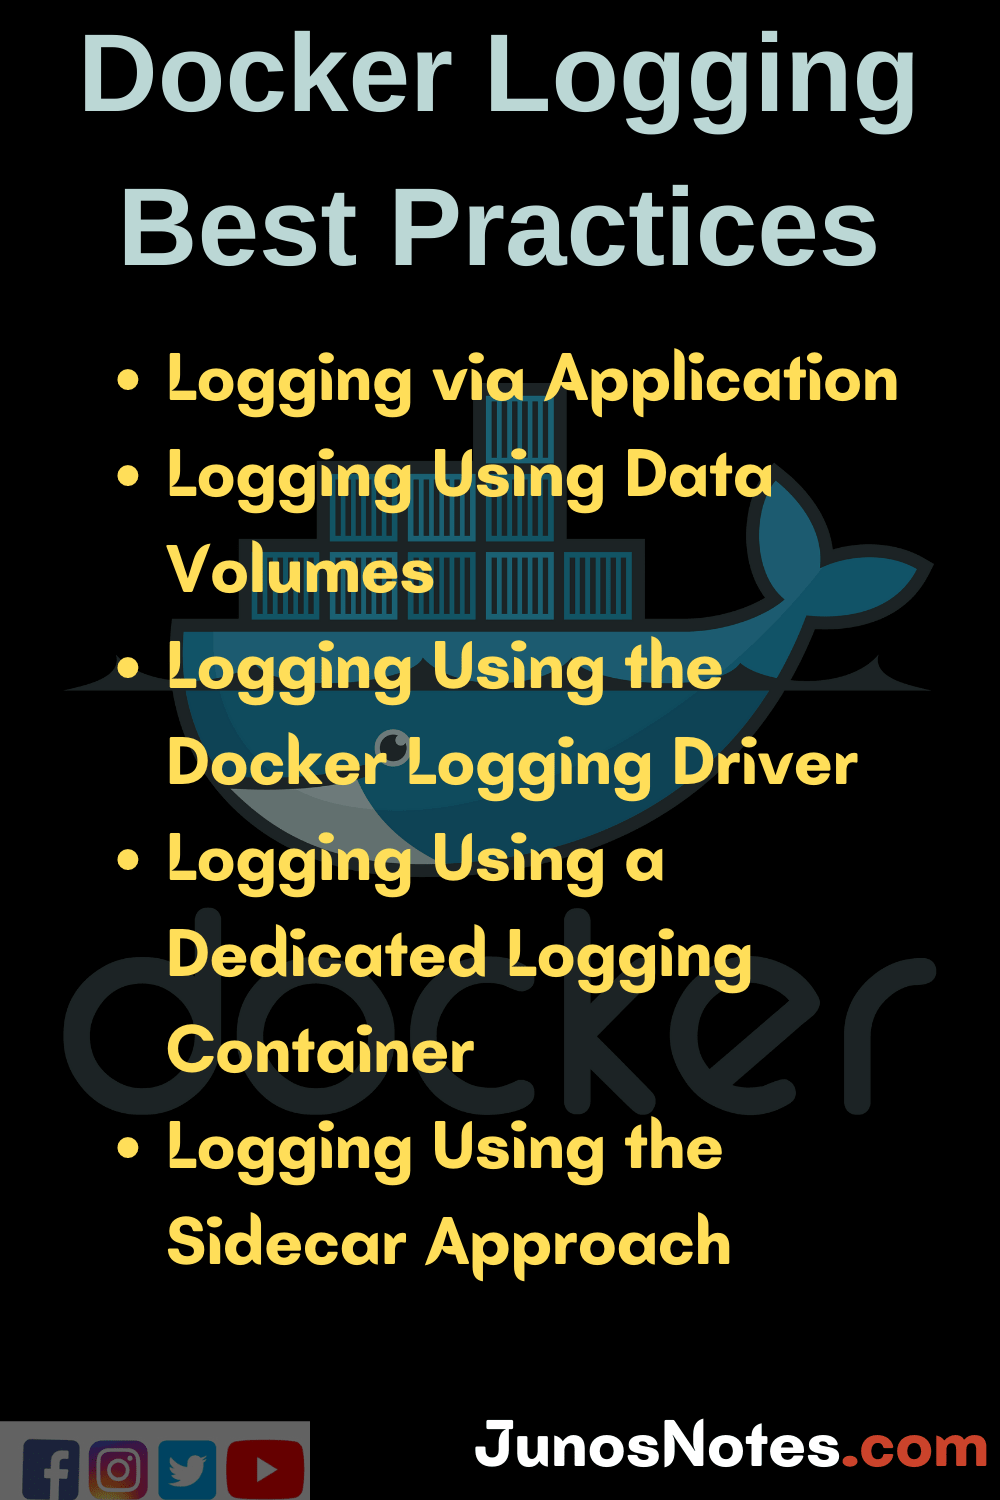 Docker logging best practices